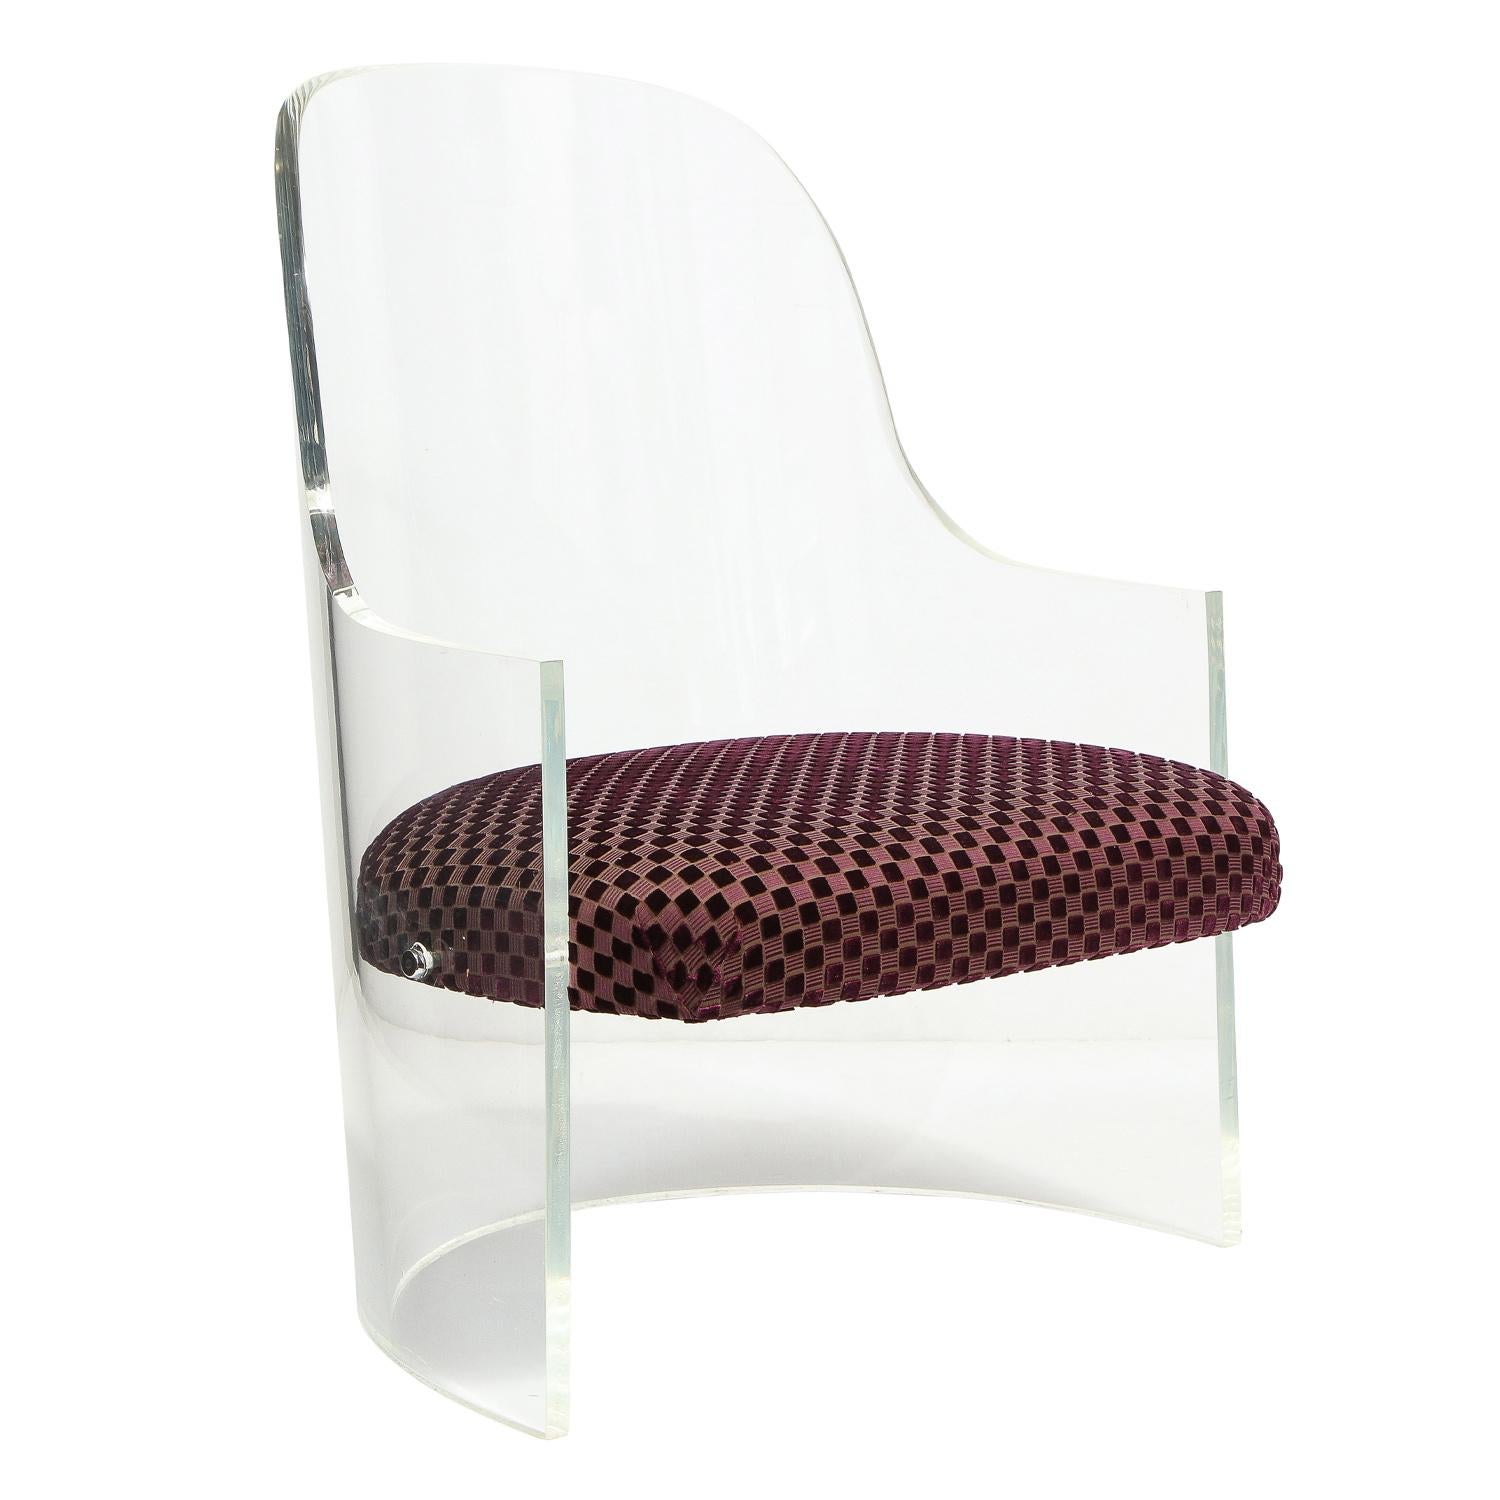 Skulpturaler Loungesessel aus dickem Lucite mit gepolstertem Sitz, amerikanisch 1970er Jahre. Dieser Stuhl hat eine schöne Größe und ist sehr gut verarbeitet. Das Lucite wurde professionell gereinigt und poliert.